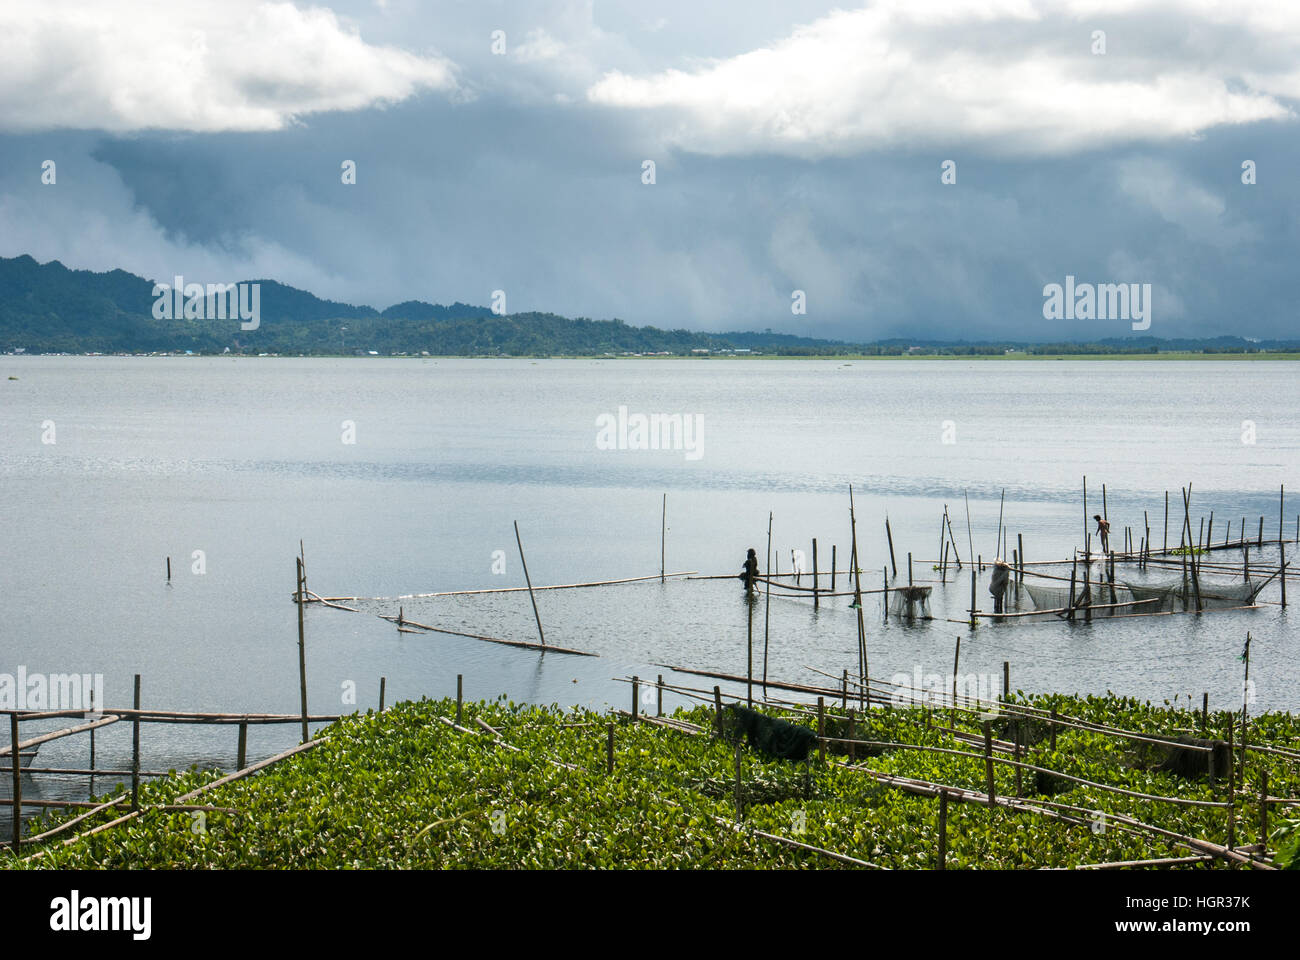 Une ferme piscicole et des paysages du lac Tondano, en avant-plan de la jacinthe d'eau, une espèce envahissante de plantes d'eau douce, dans le nord de Sulawesi, en Indonésie. Banque D'Images